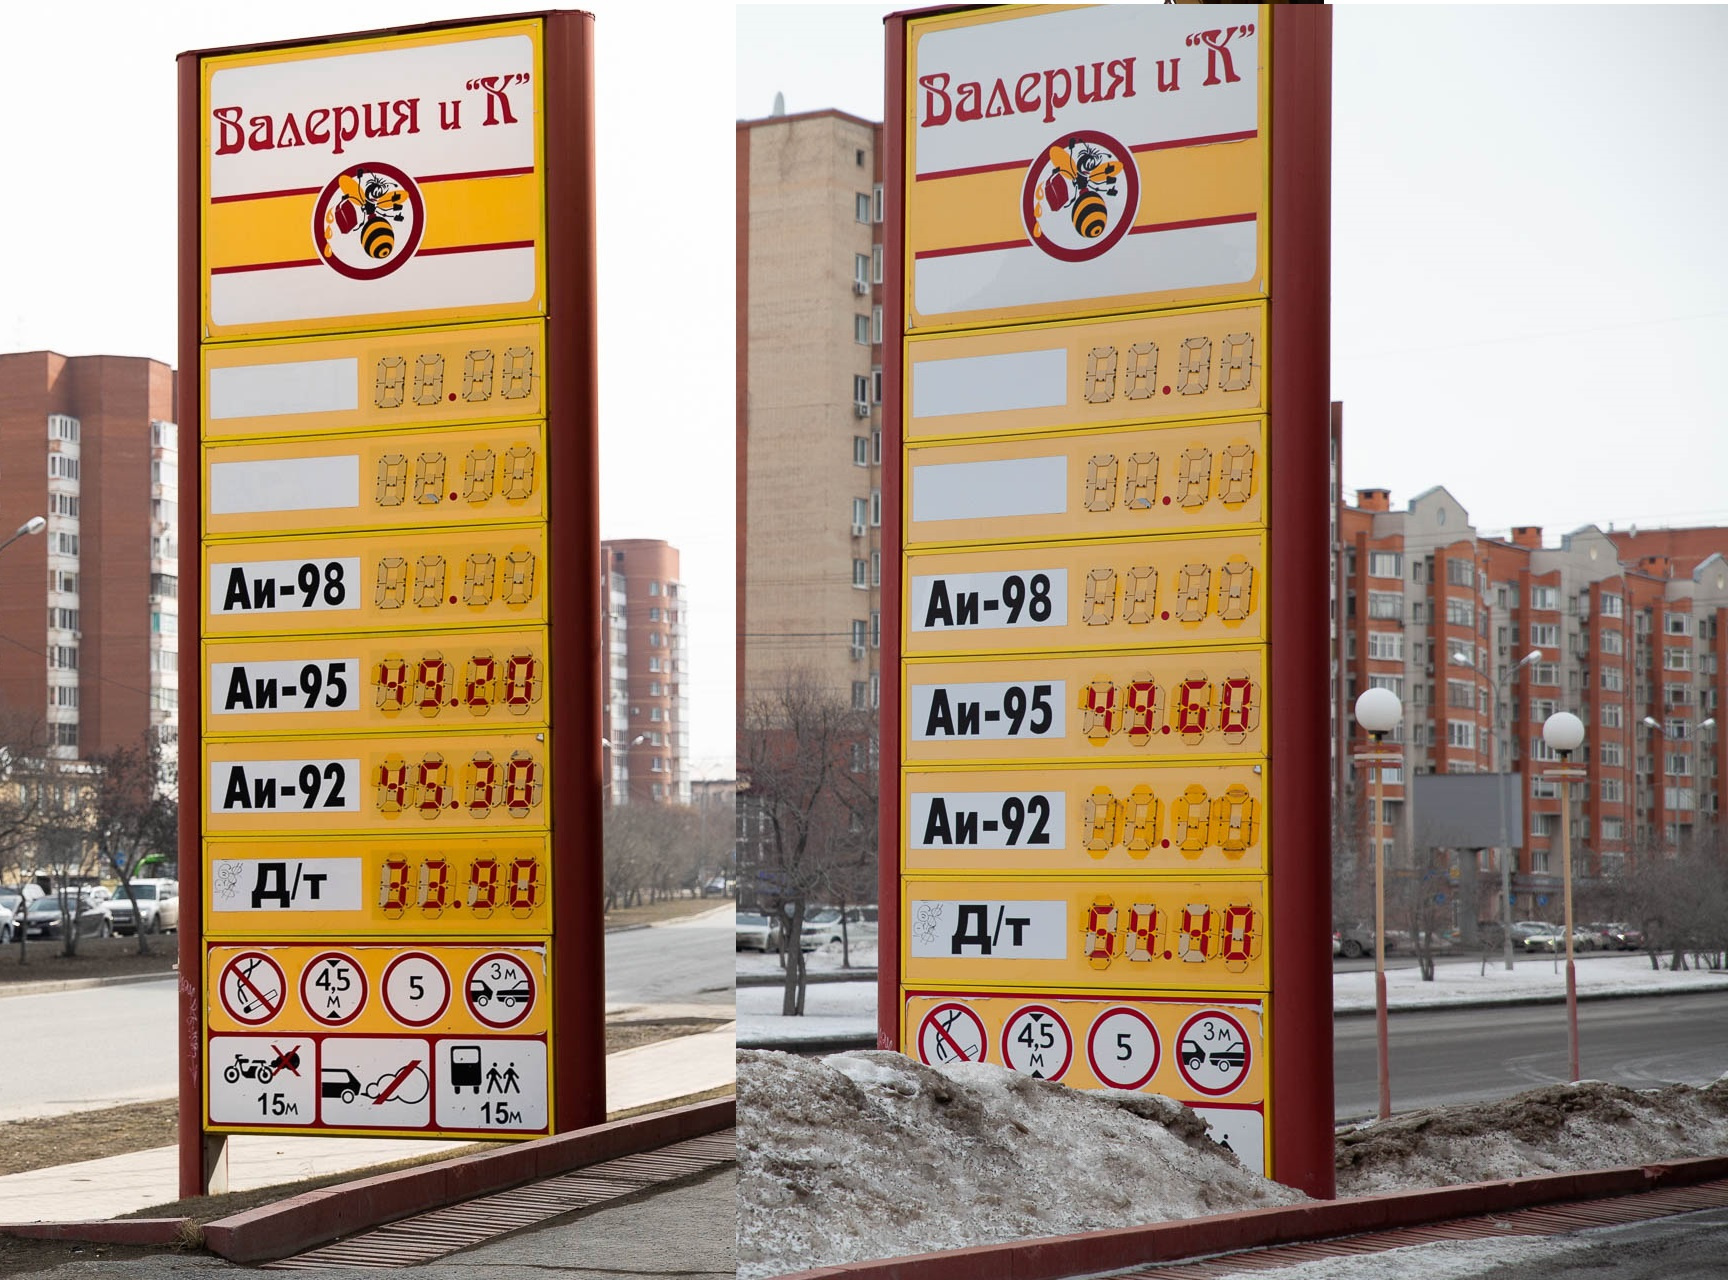 Заправочная станция «Валерия К». Слева — актуальная цена, справа — первоапрельская. Дизель сразу отминусовал 20 (!) рублей